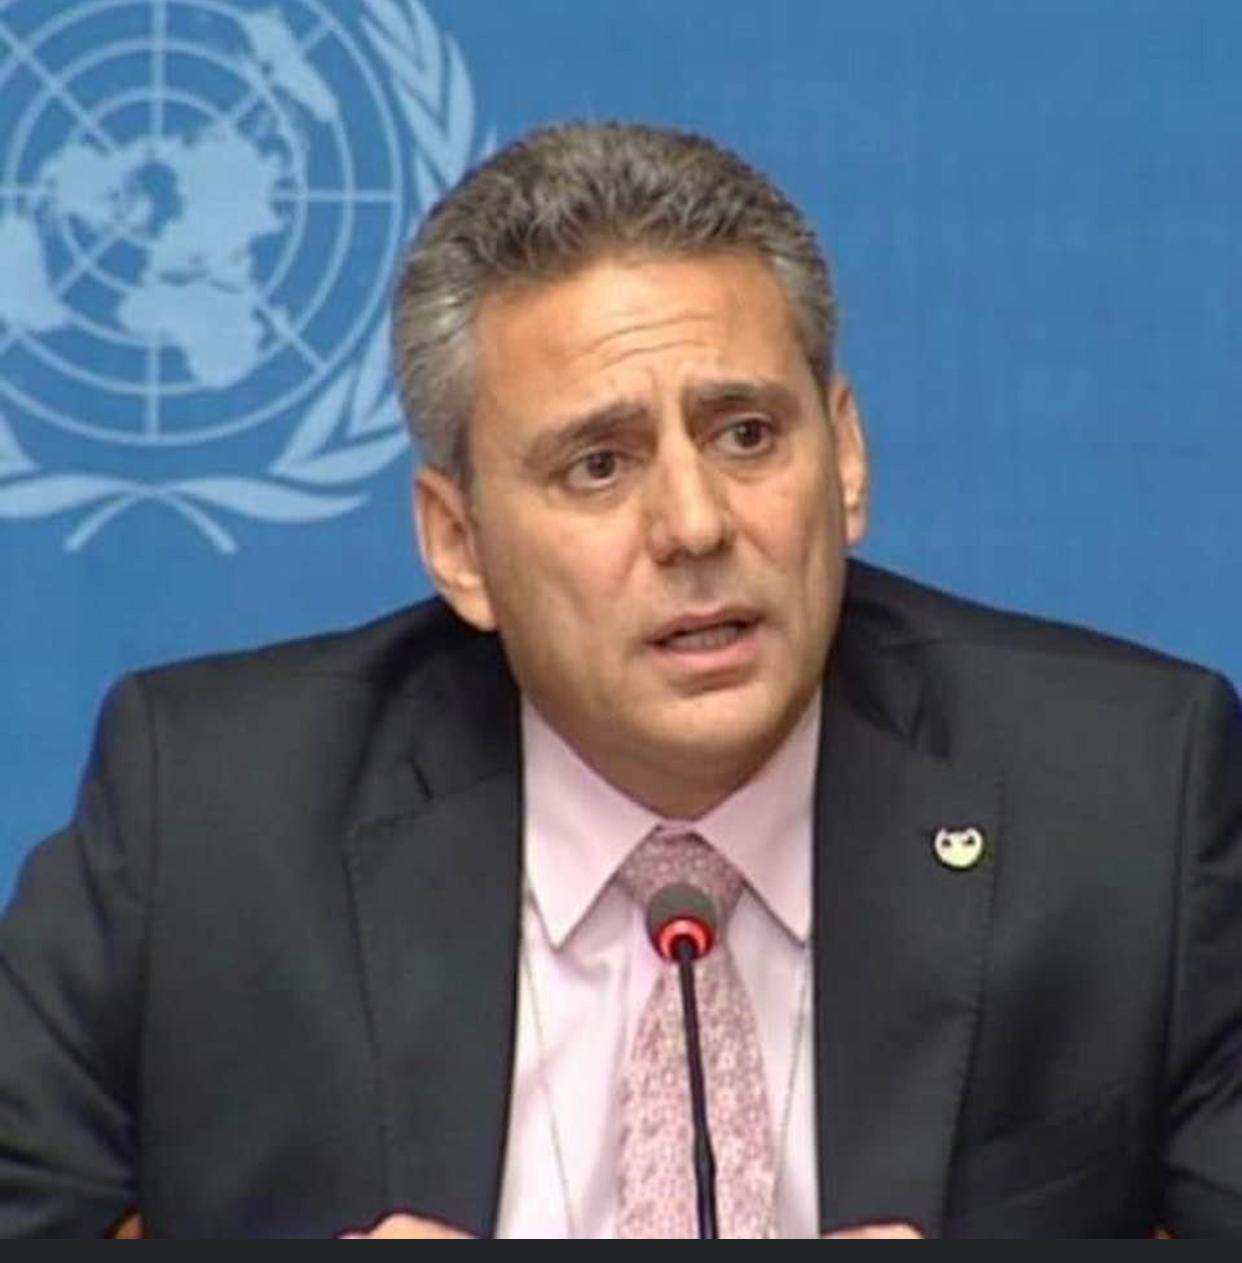 الاردني مهند هادي برتبة مساعدا للأمين العام للأمم المتحدة في مكتب تنسيق الشؤون الإنسانية